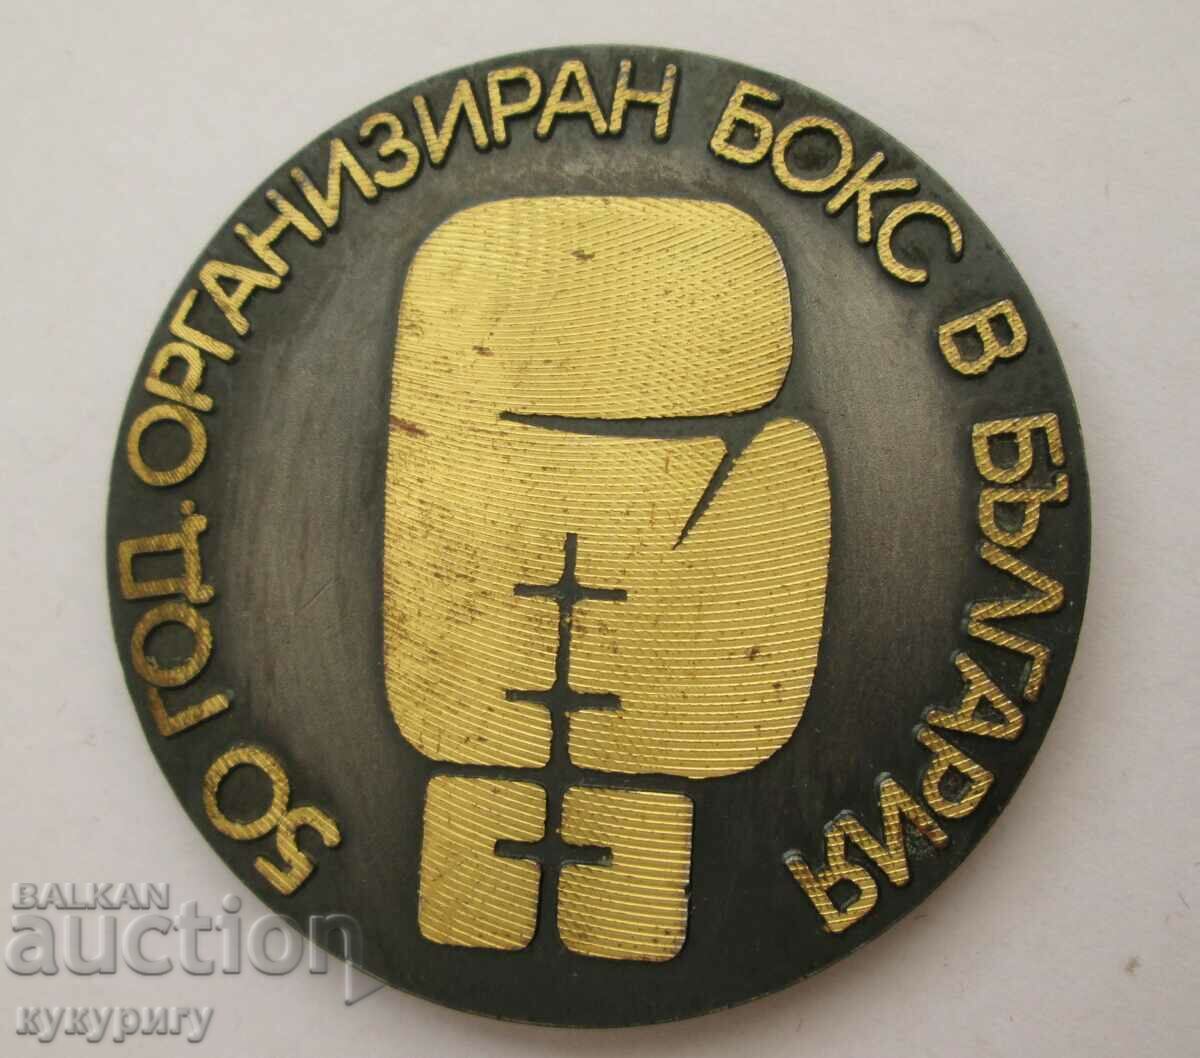 Placă cu medalie de onoare 50 de ani Box în Bulgaria 1924-1974